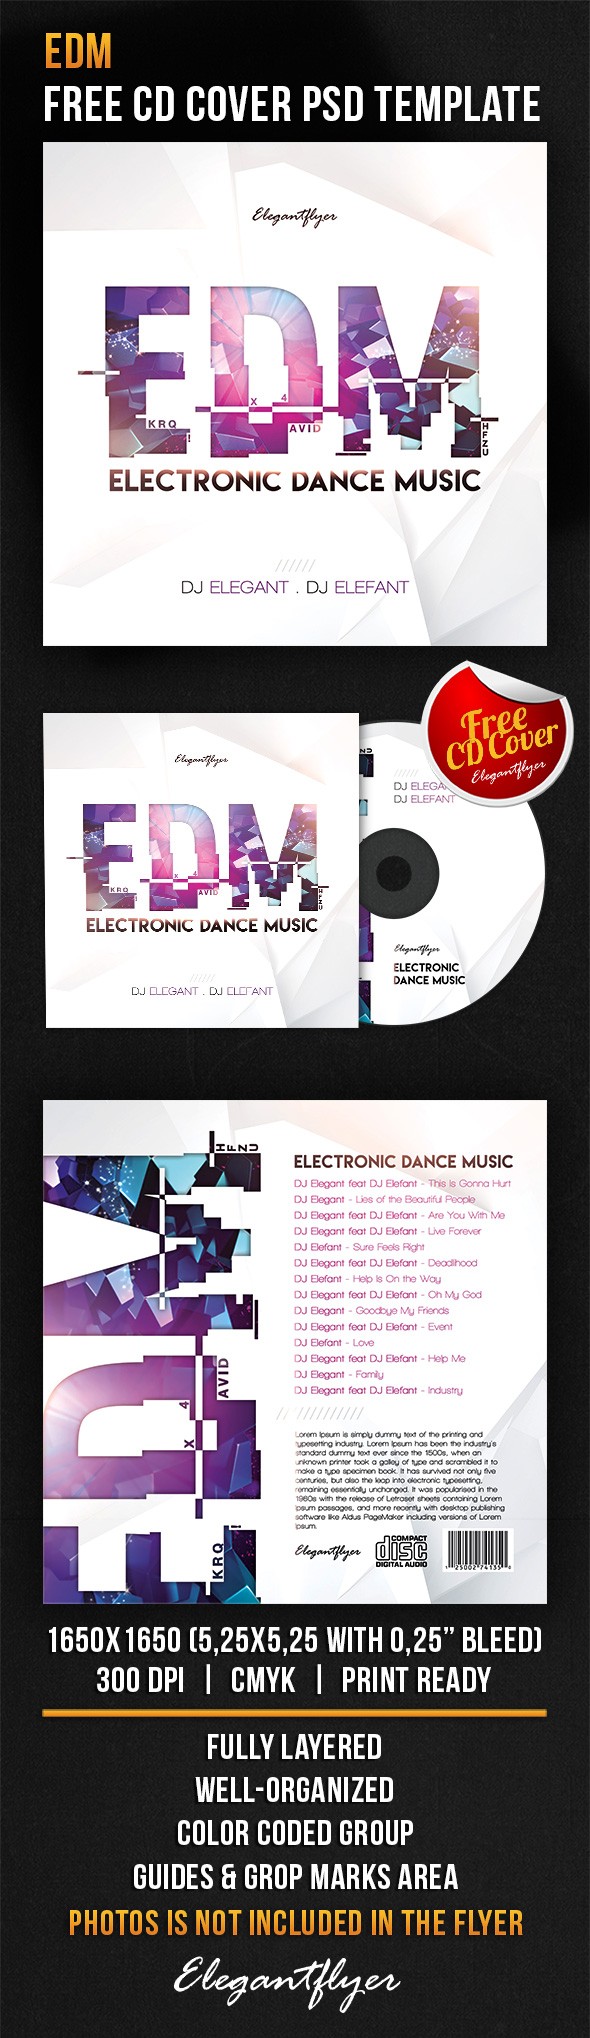 EDM - elektroniczna muzyka taneczna. by ElegantFlyer